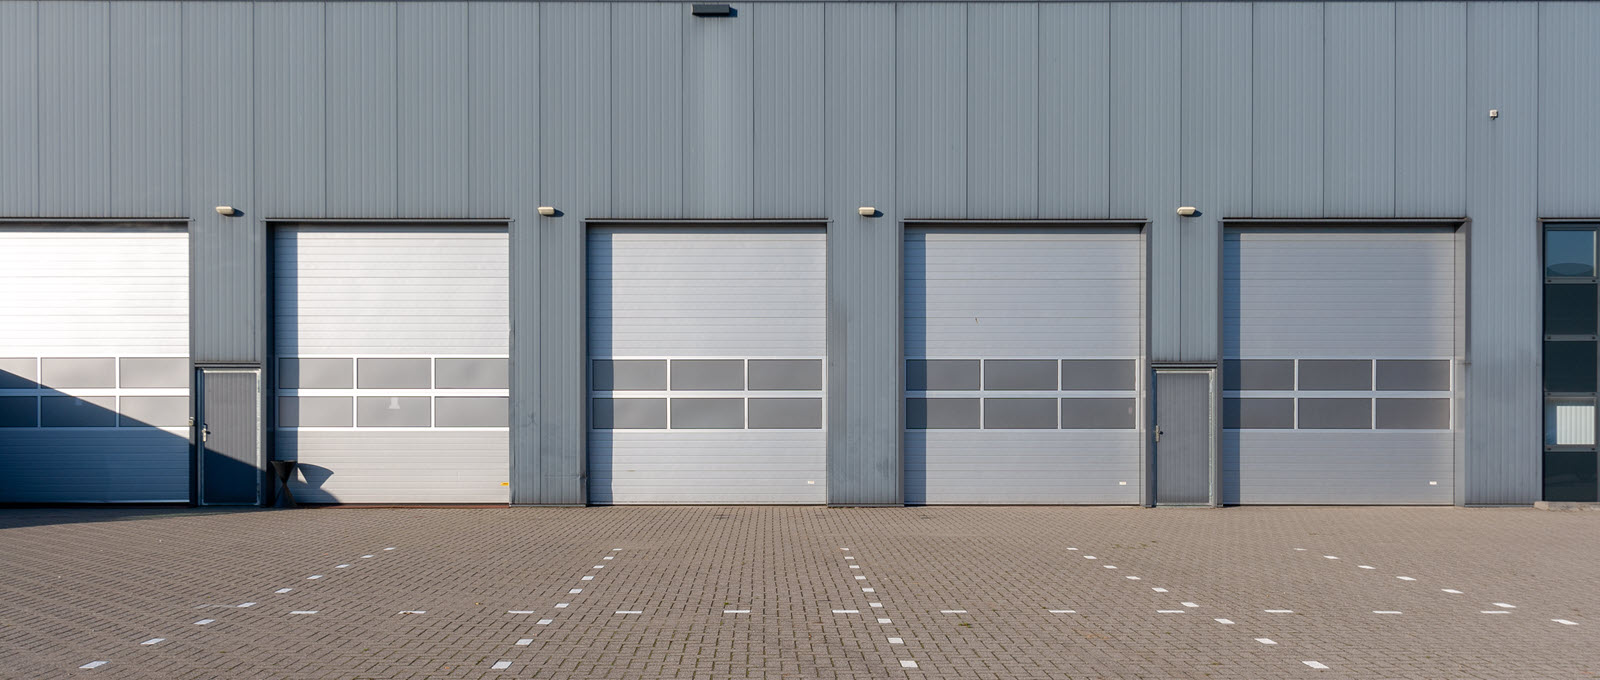 Commercial door option for workshops - roller doors.